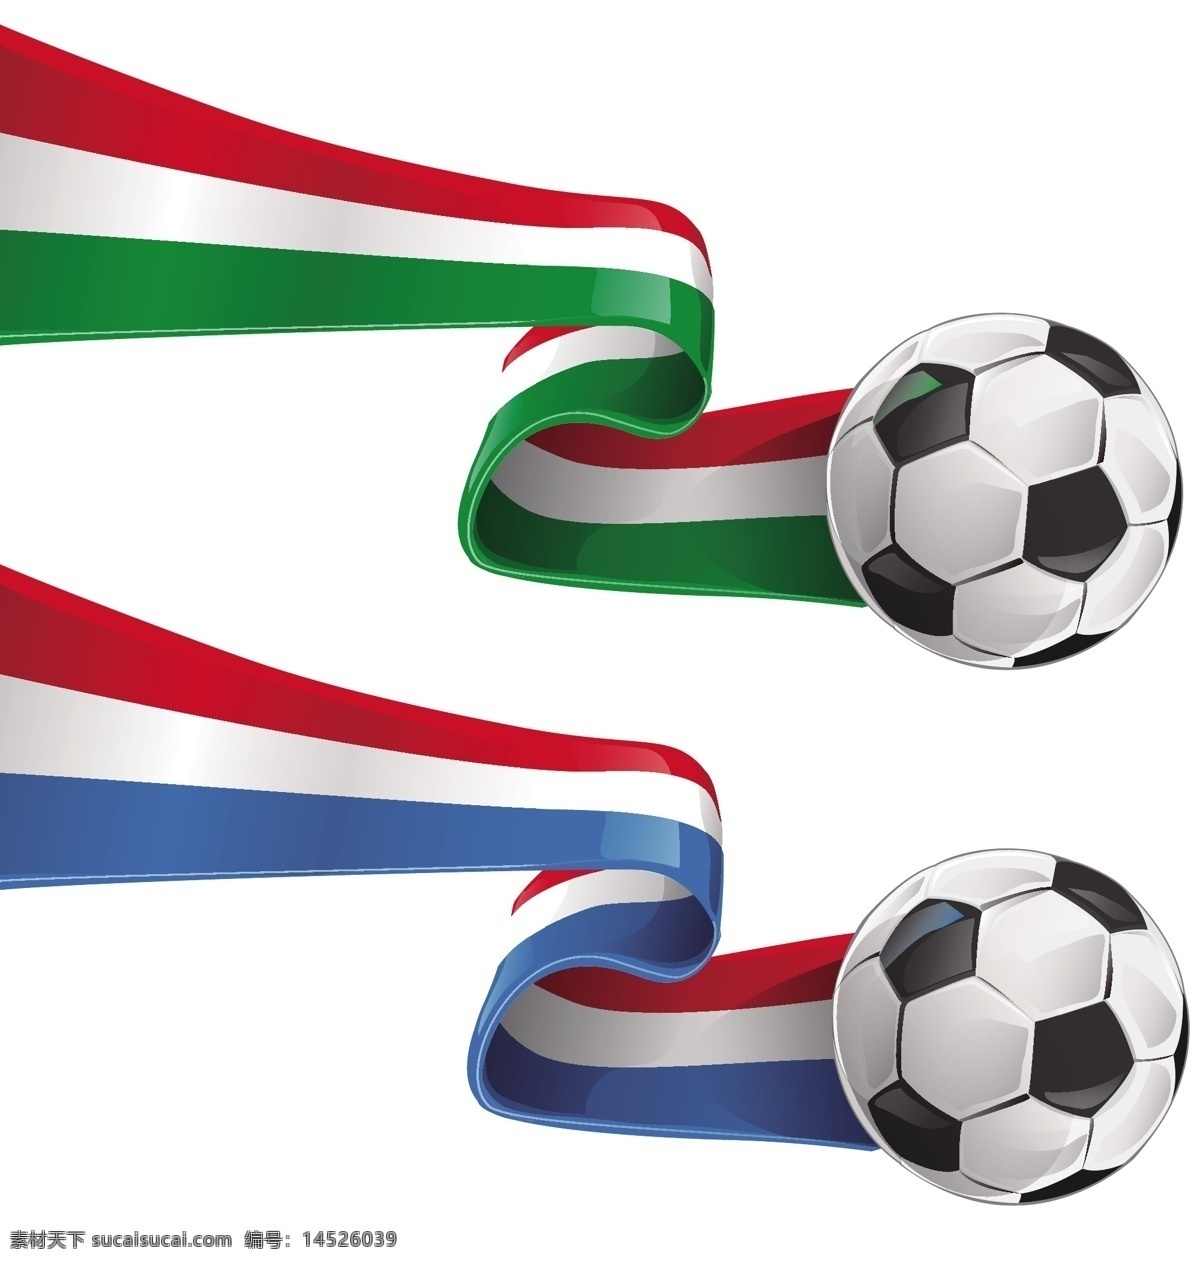 矢量足球素材 矢量足球 法国国旗 足球 欧洲杯素材 法国欧洲杯